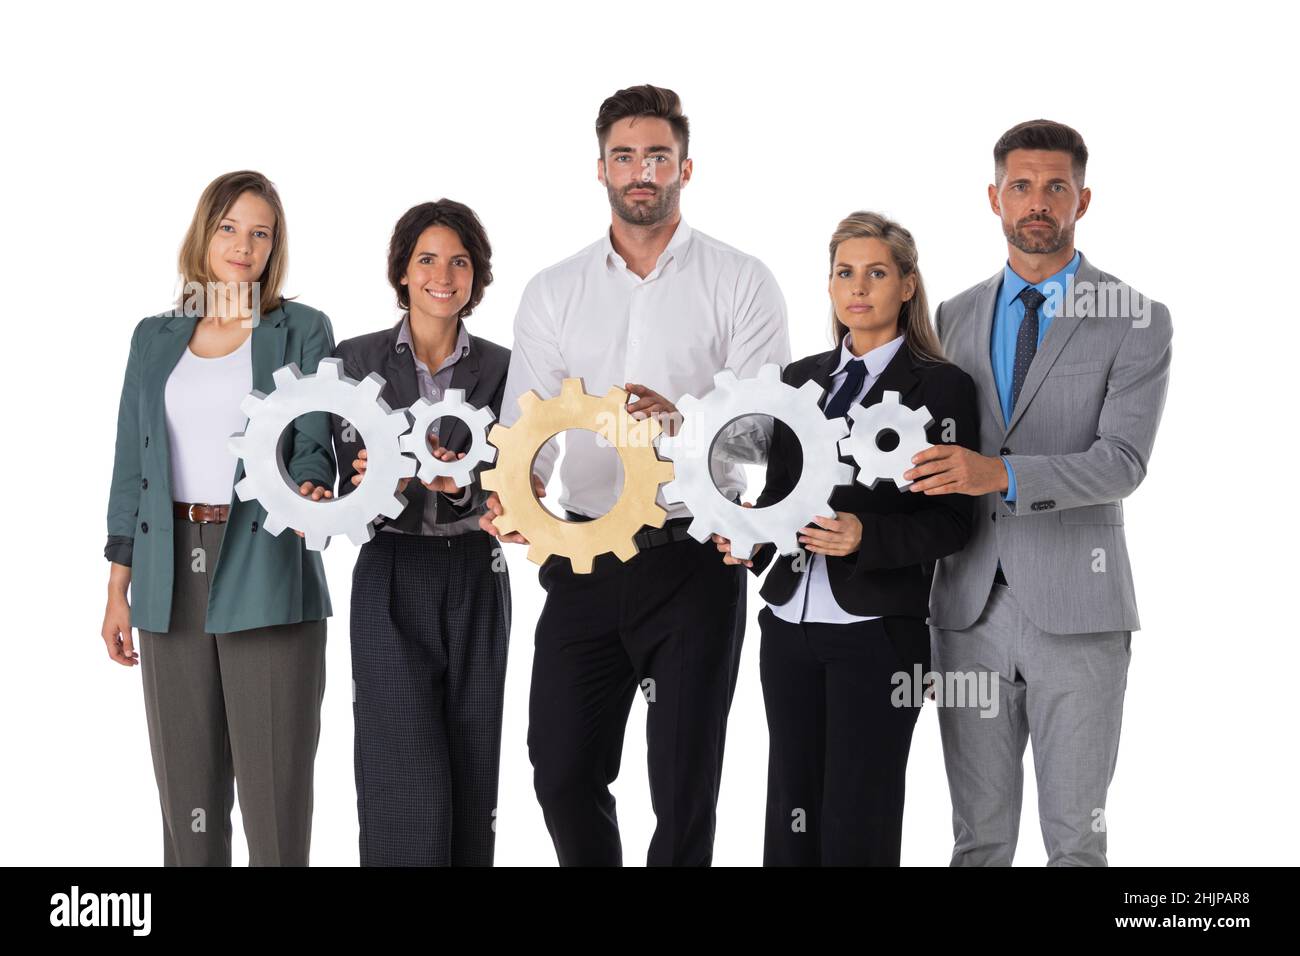 Grupo de empresarios felices que tienen ruedas de mano cooperación de trabajo en equipo oncept aislado sobre fondo blanco Foto de stock